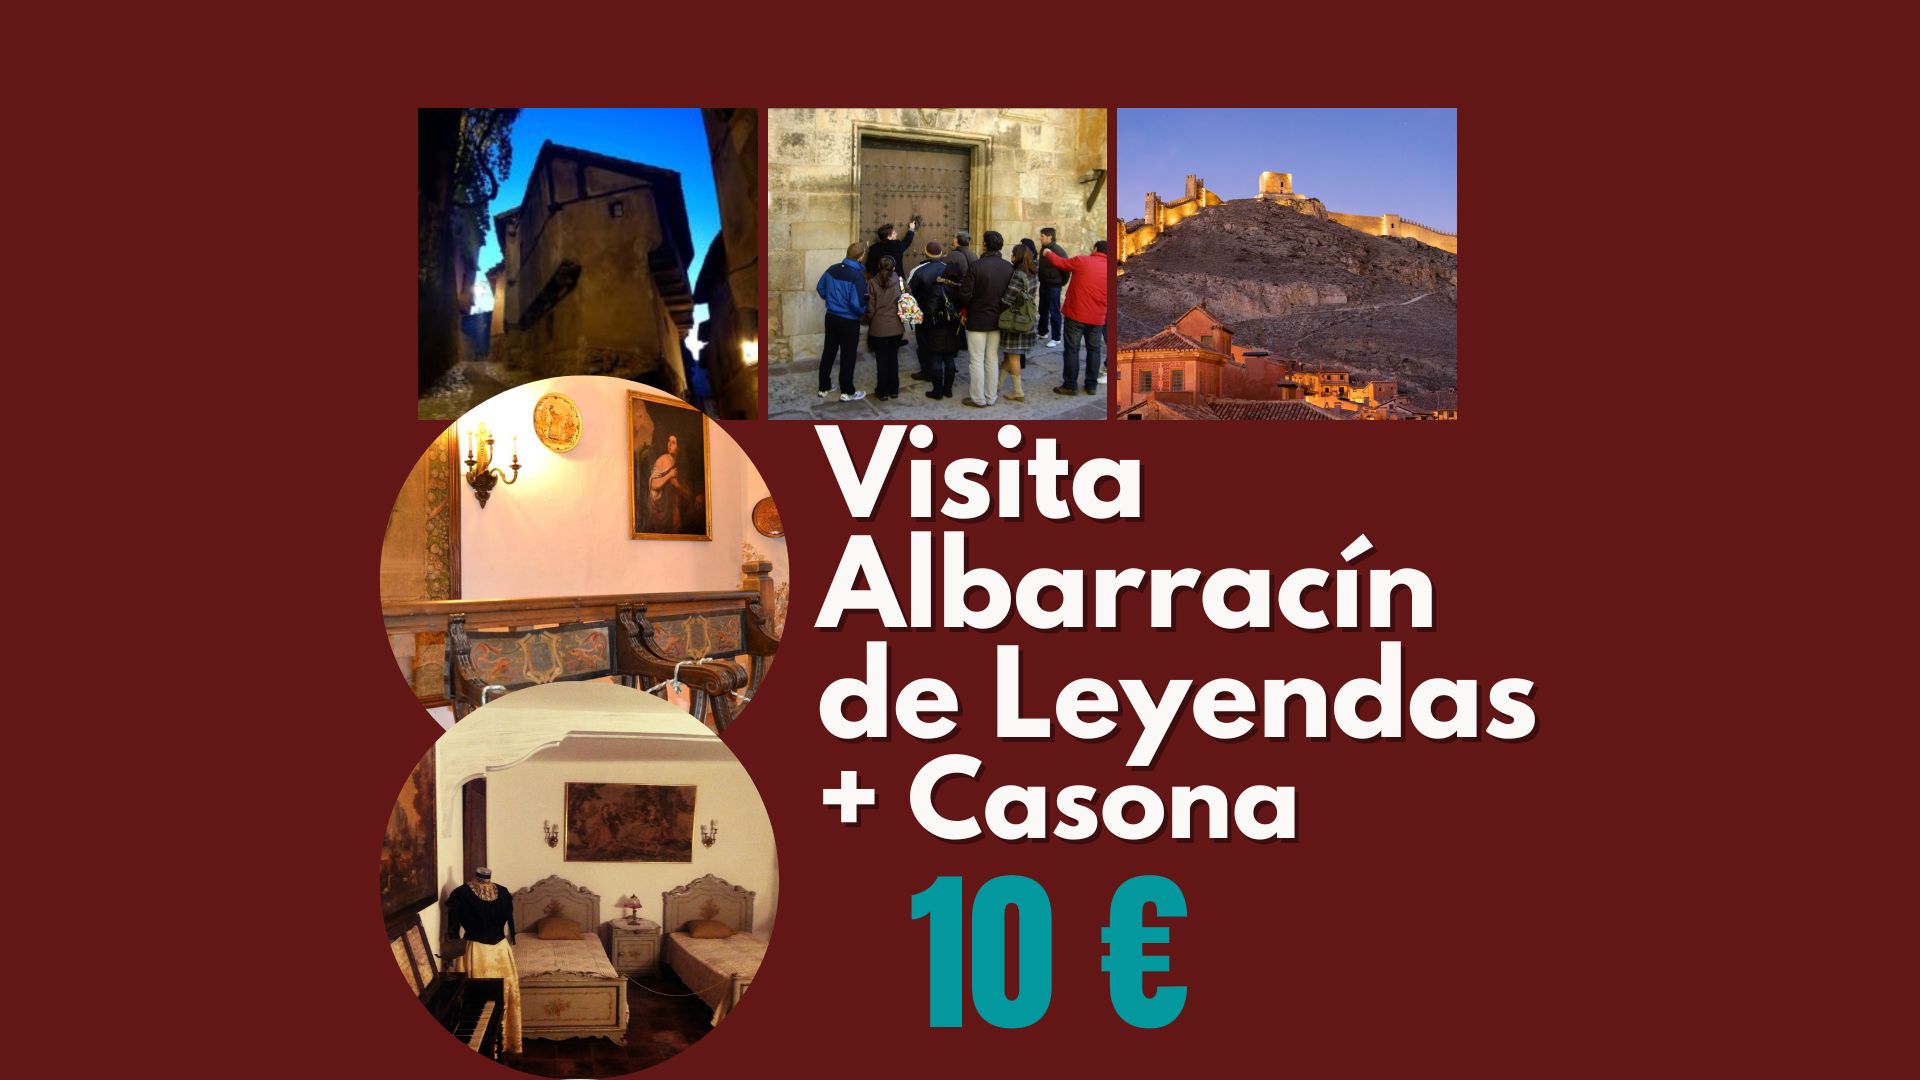 Este sábado 4 de Junio… Visita Guiada en Albarracín Especial de Leyenda con sorpresa teatralizada! Reserva tu plaza a las 19:30h!